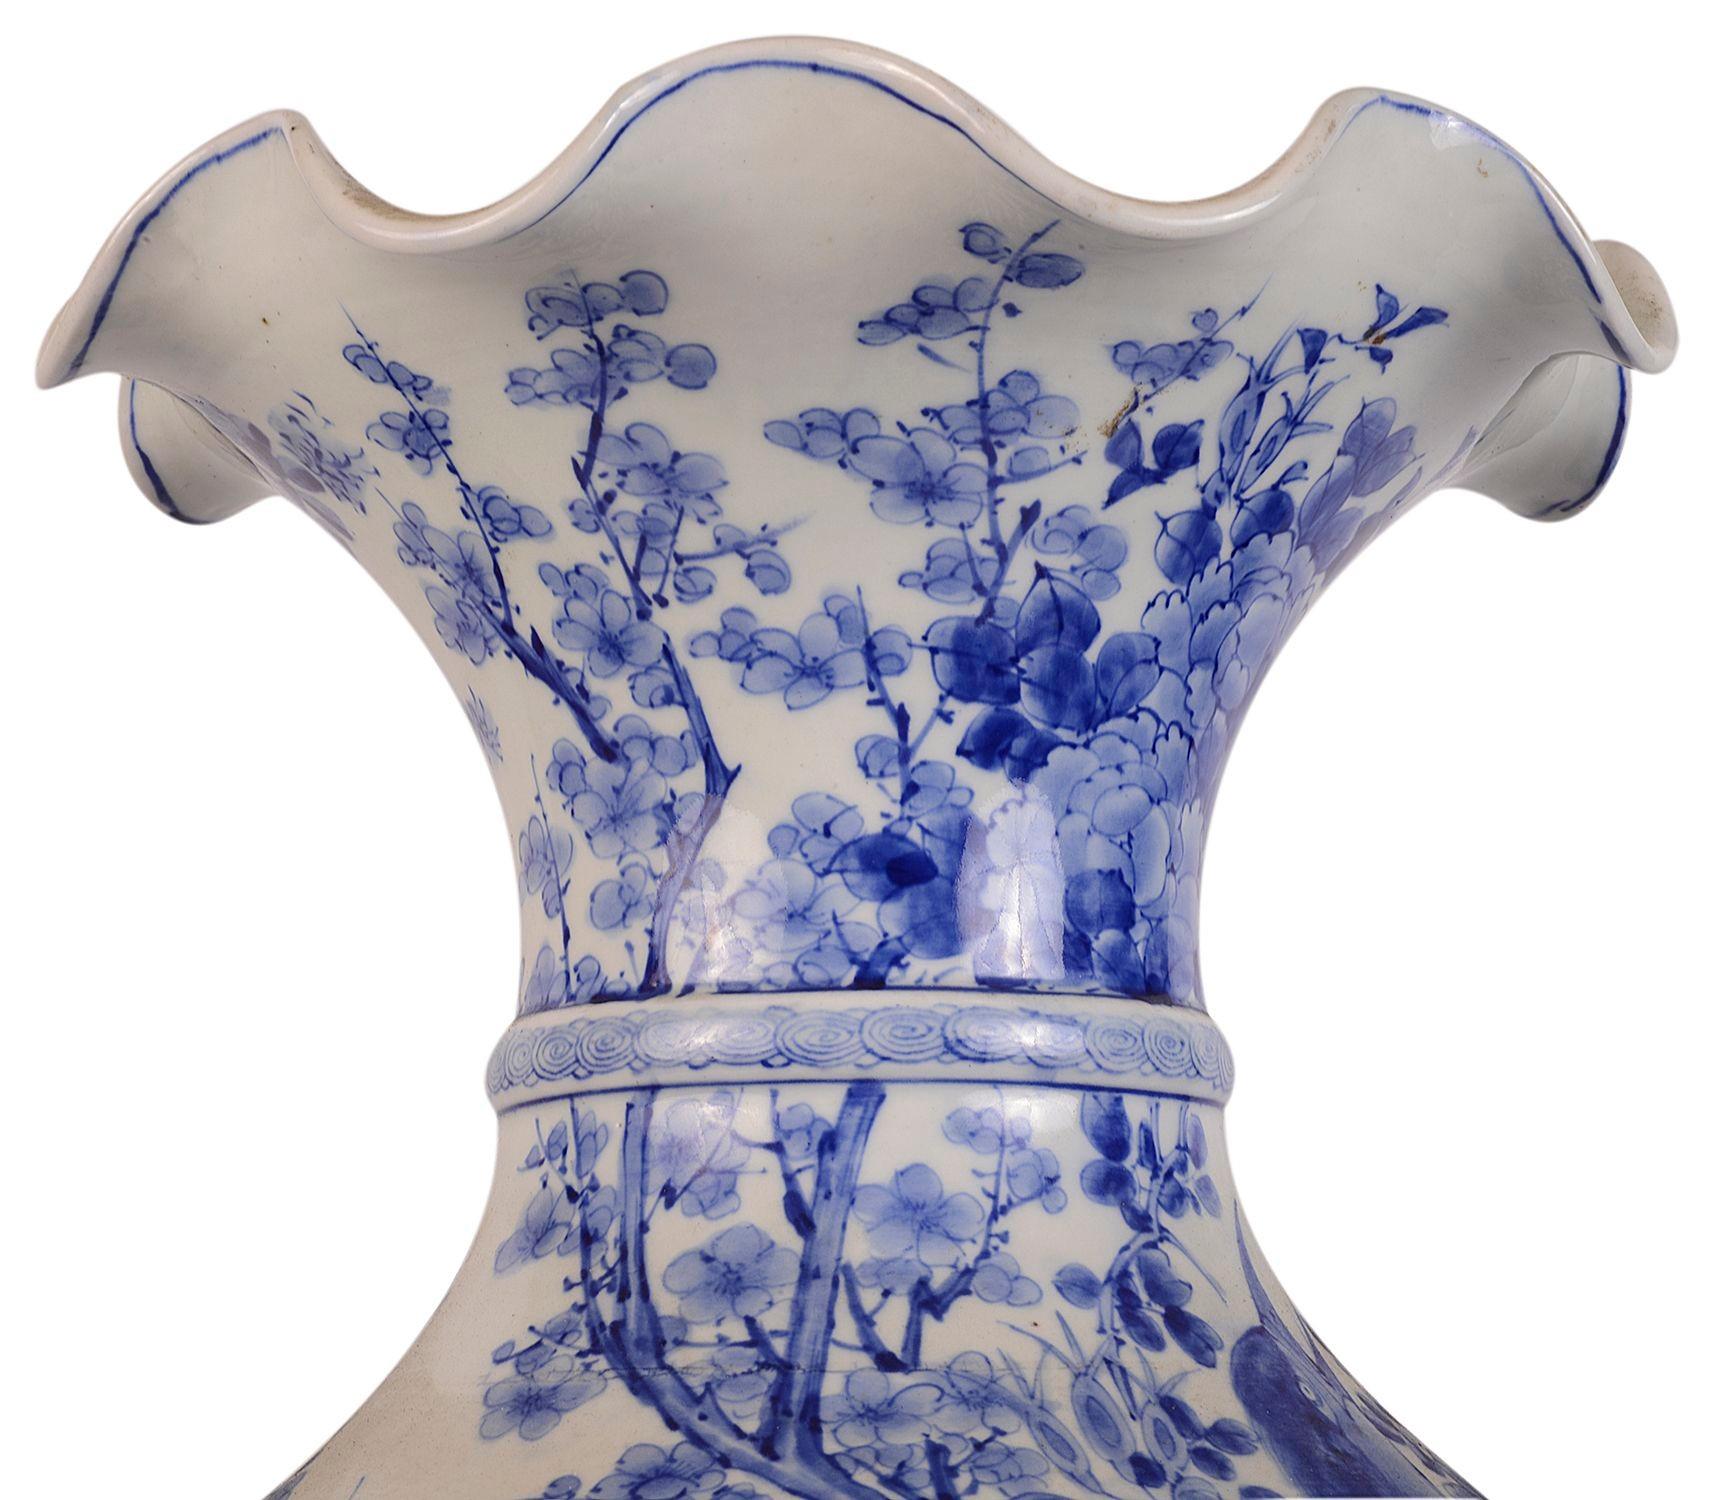 Très impressionnant vase japonais bleu et blanc de bonne qualité de la fin du XIXe siècle, avec un col évasé, une magnifique décoration florale peinte à la main en bleu, le dragon en relief s'enroulant autour du vase, la base décorée d'une bordure à